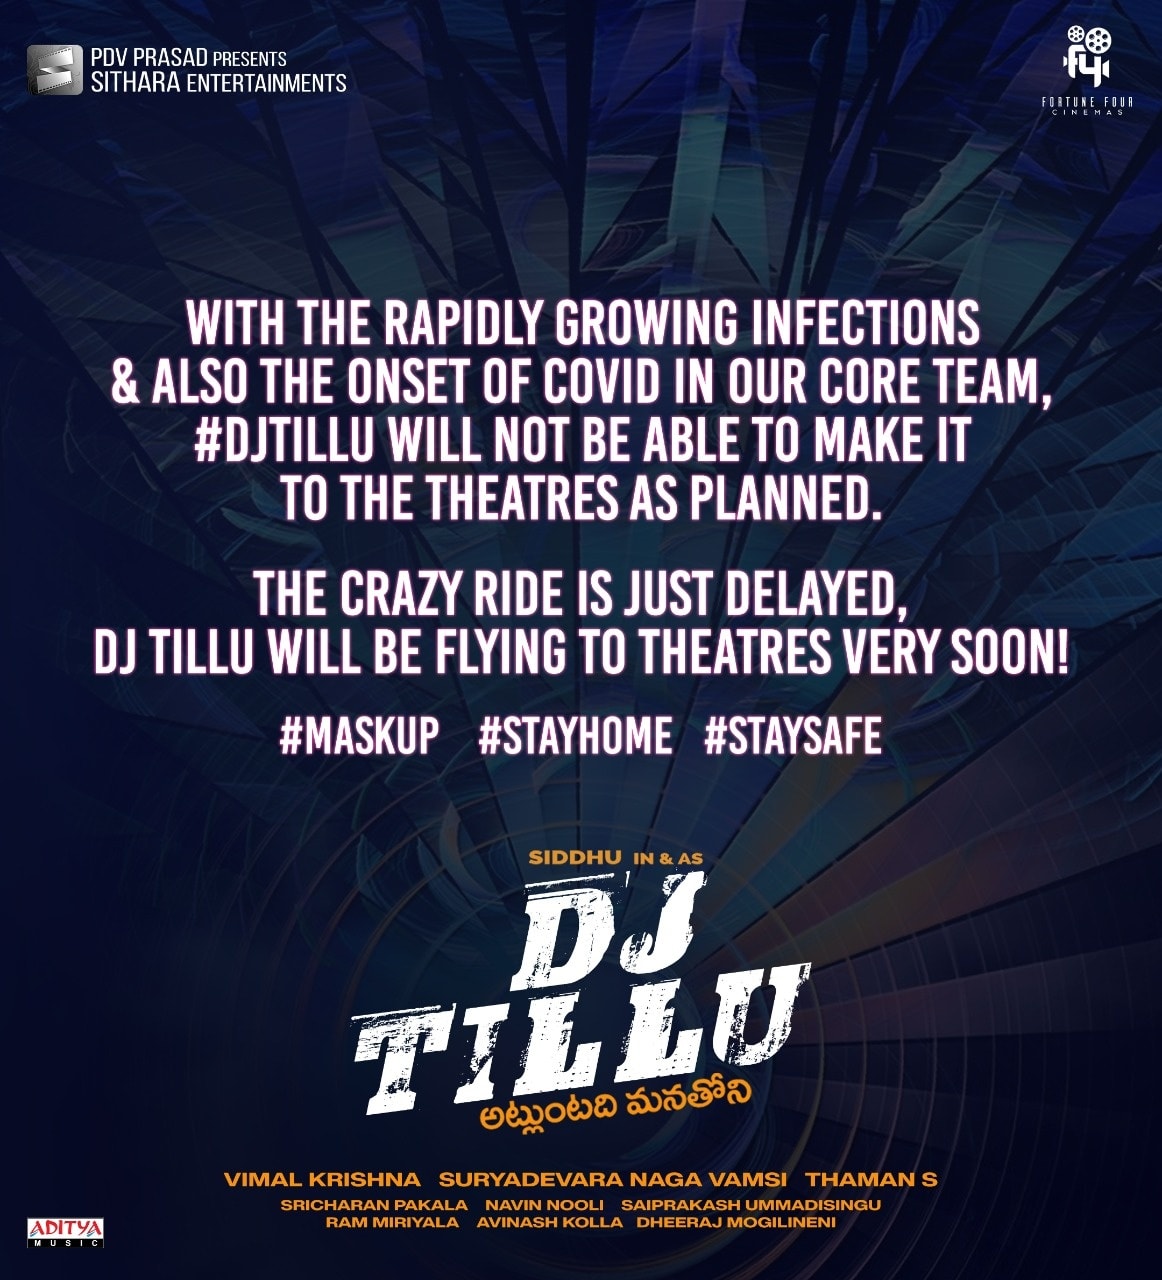 DJ Tillu movie postponed